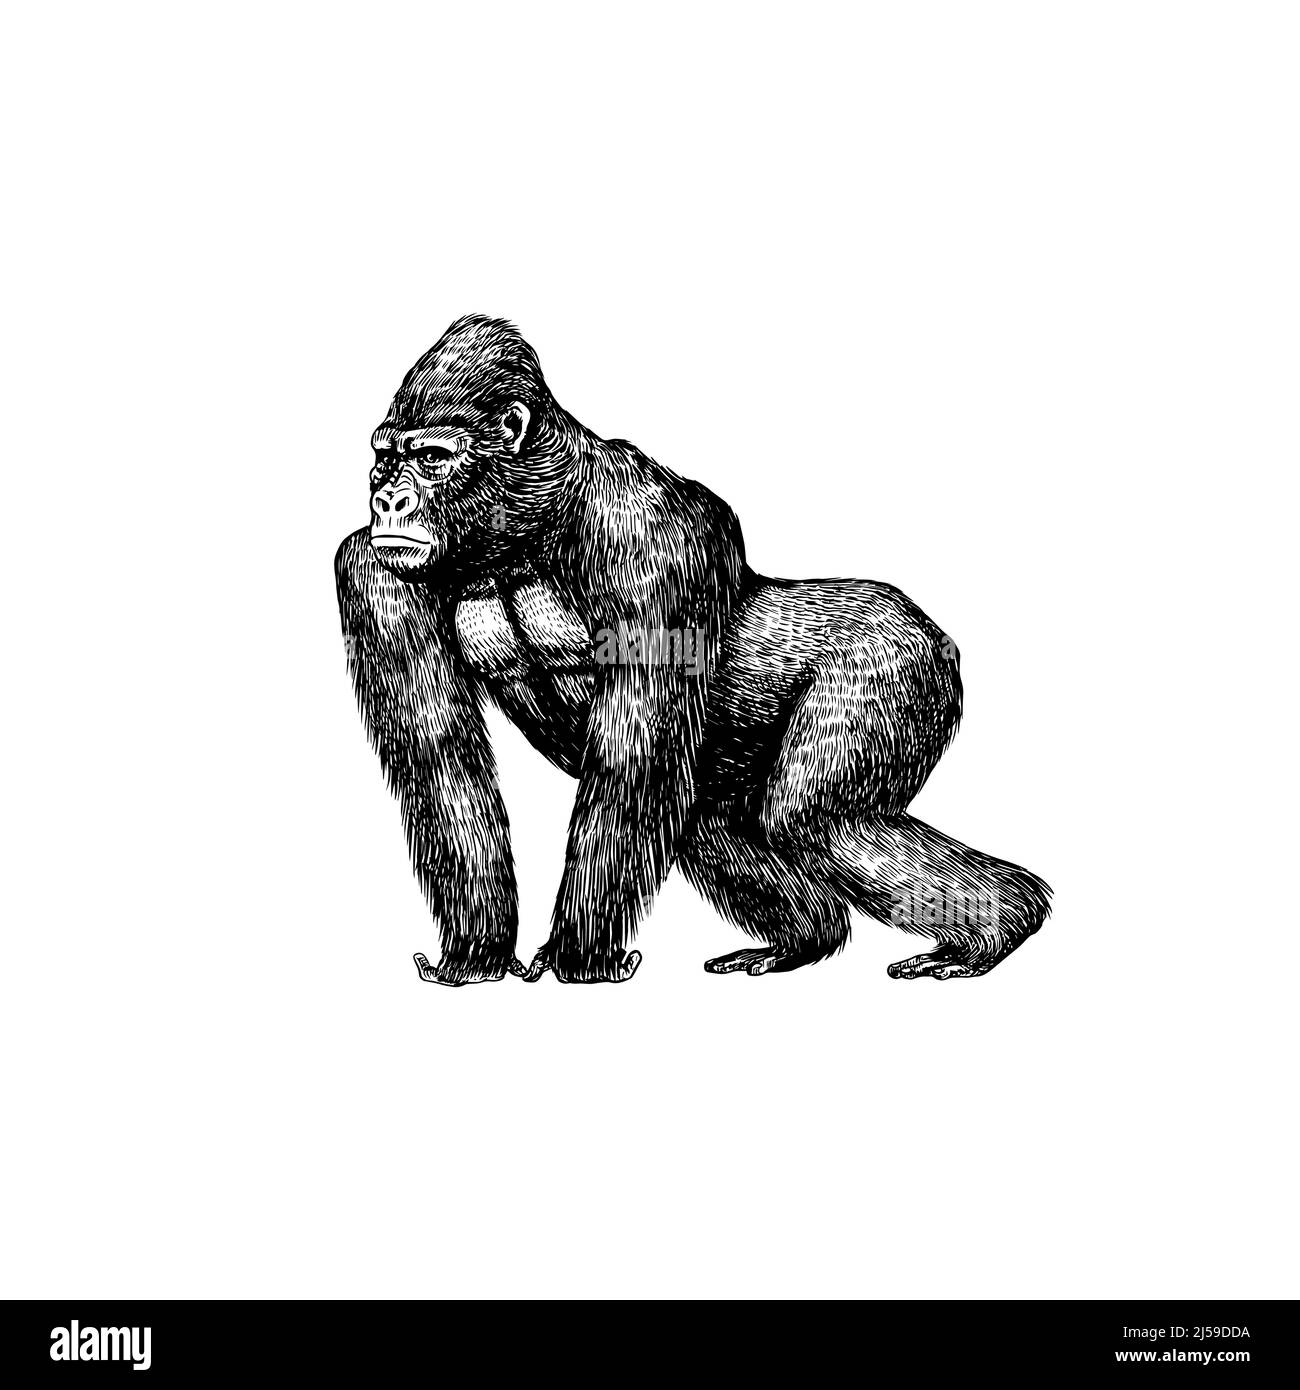 Gorilla monkey Banque d'images détourées - Alamy